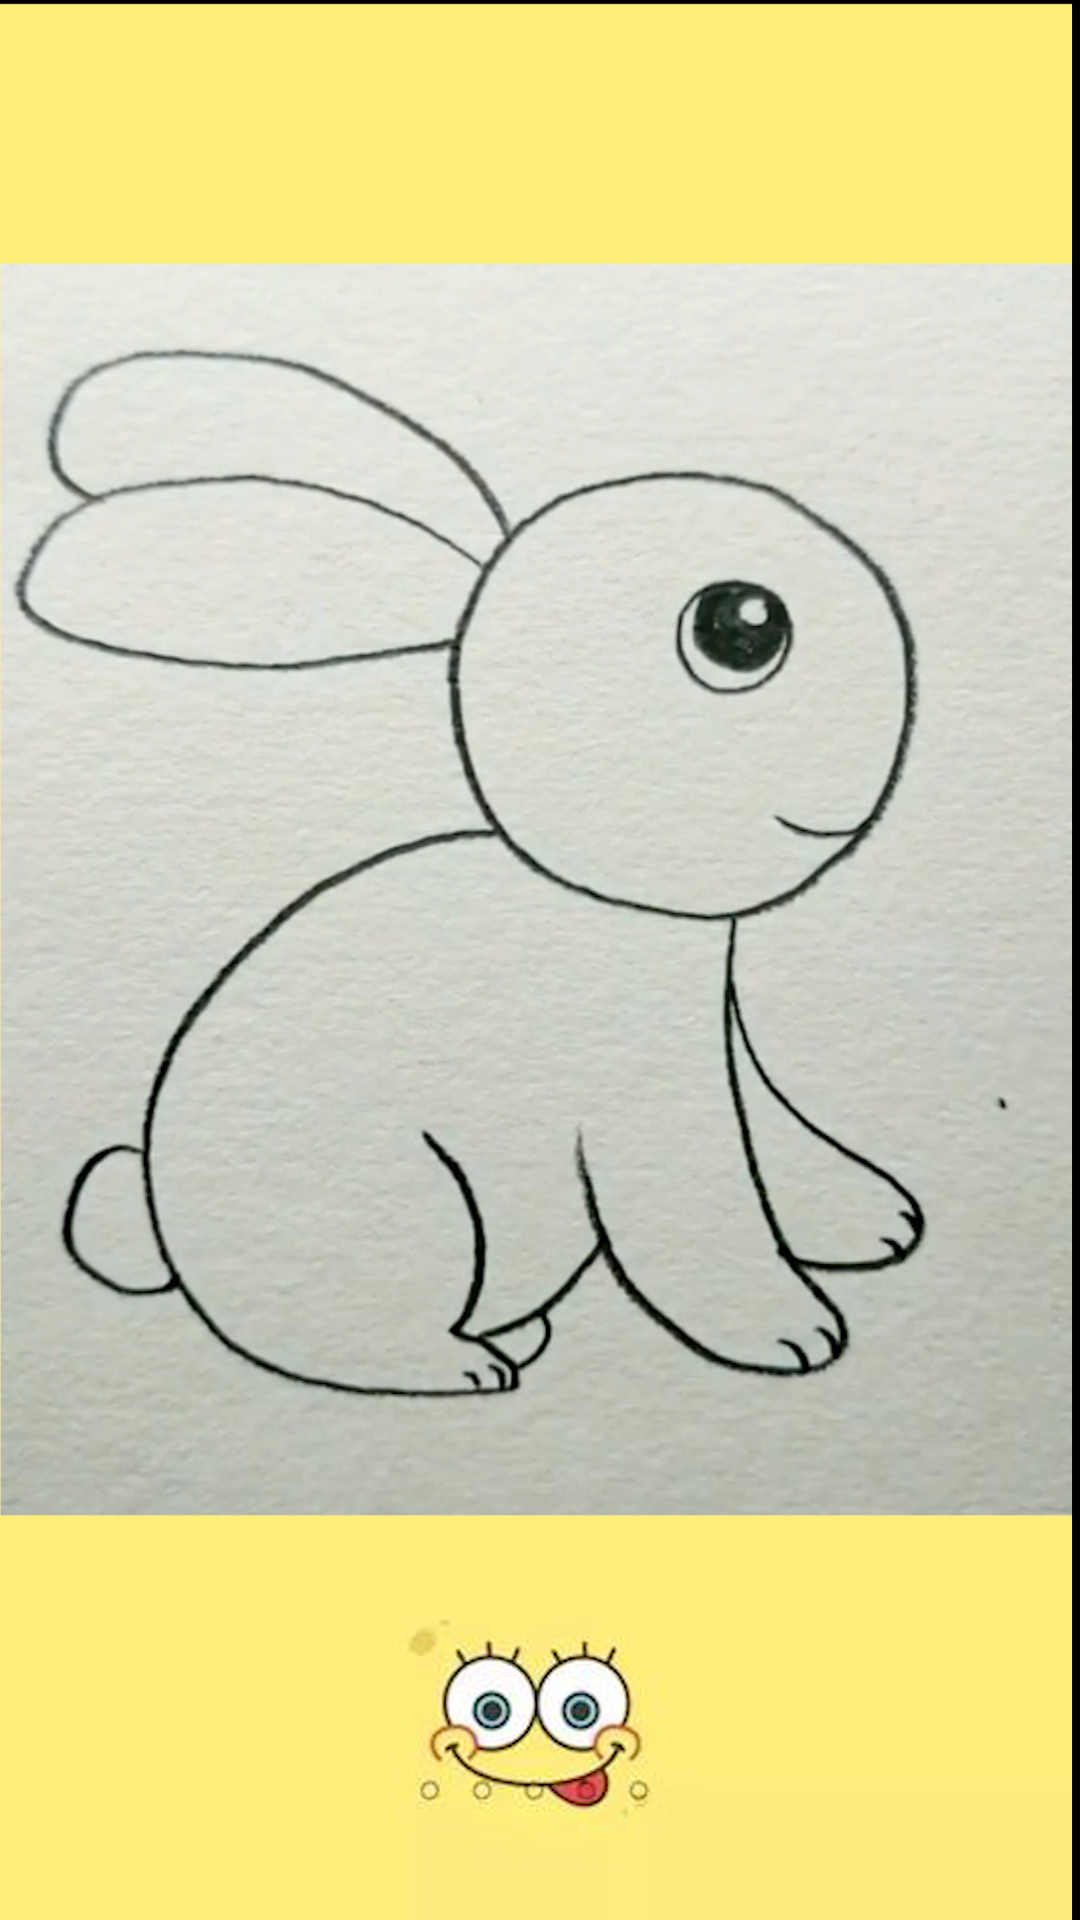 画一只小兔子萌萌图片